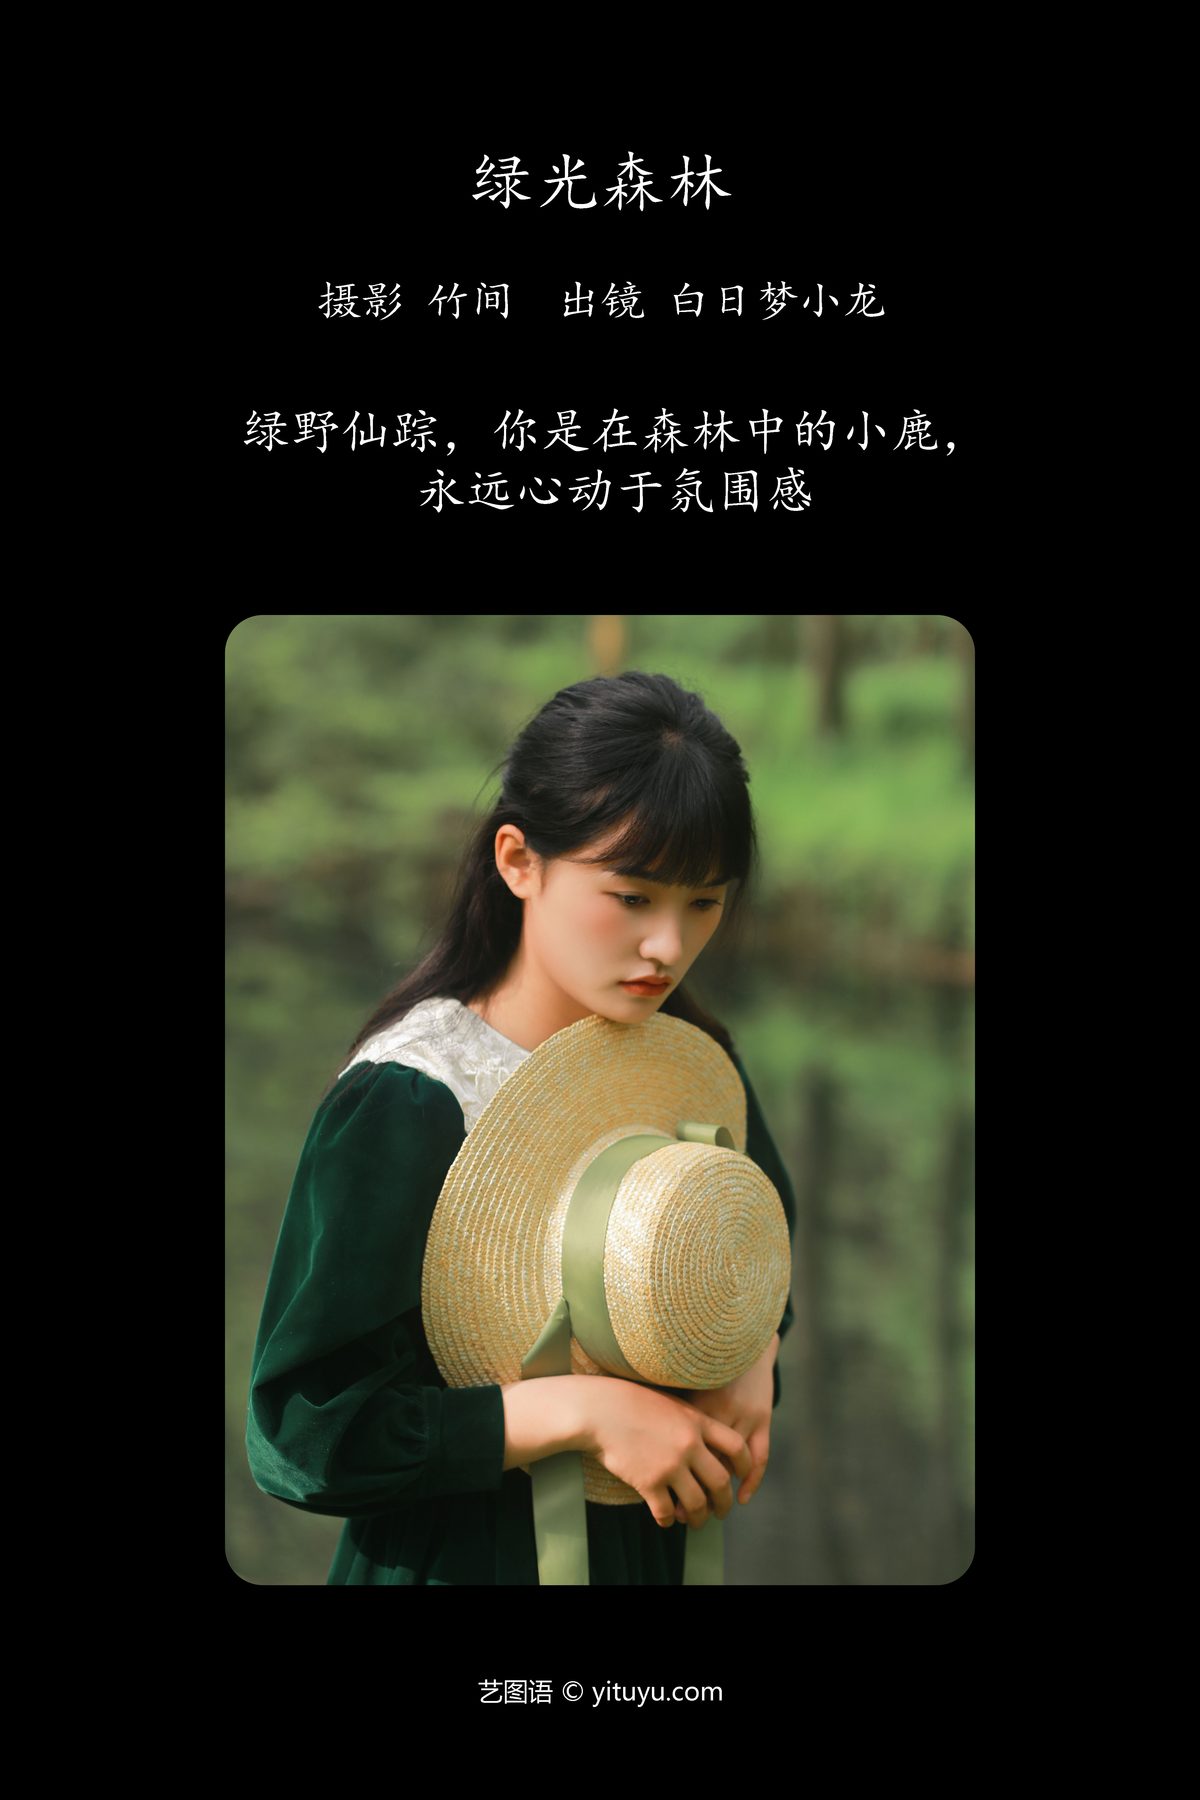 YiTuYu艺图语 Vol 5407 Bai Ri Meng Xiao Long 0001 9314898628.jpg